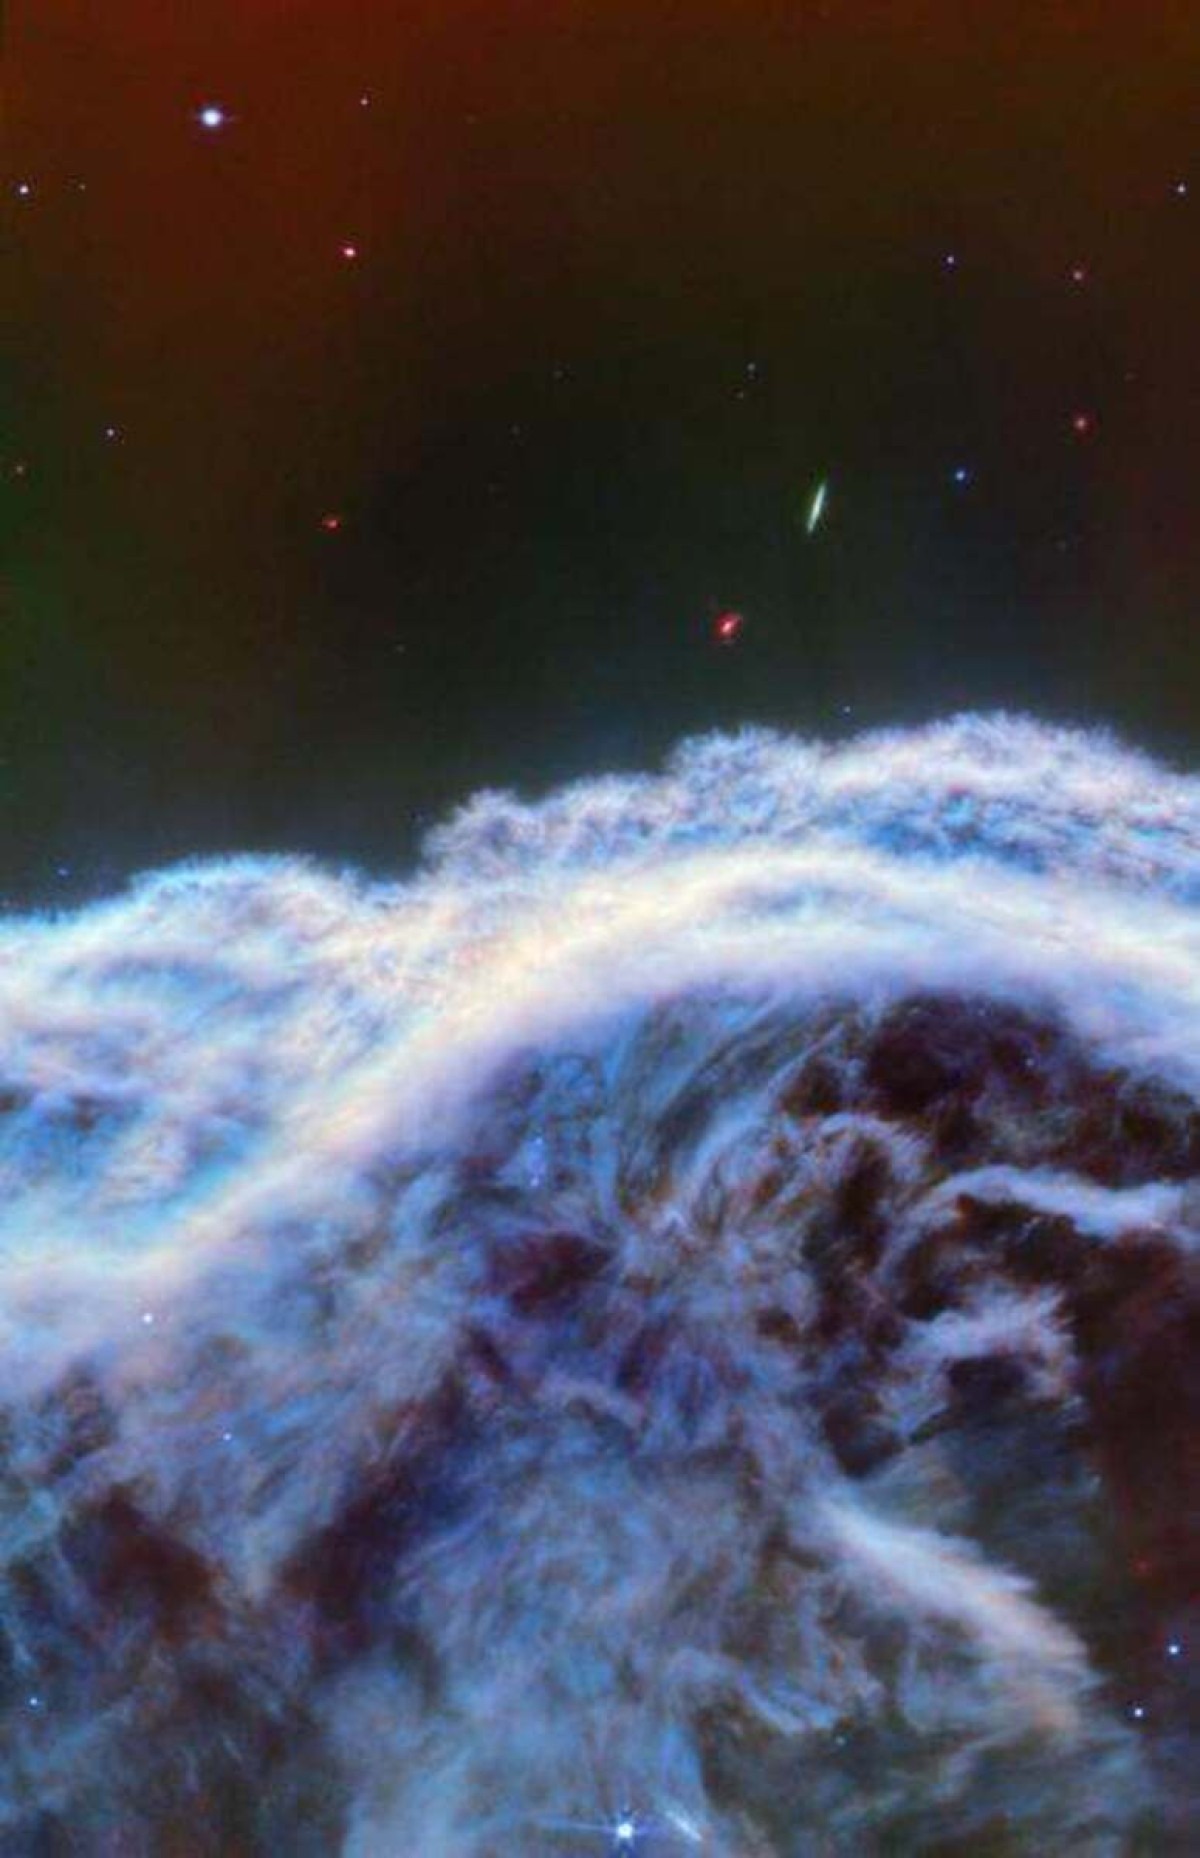 Imagens da nebulosa Cabeça de Cavalo captadas pelo telescópio James Webb